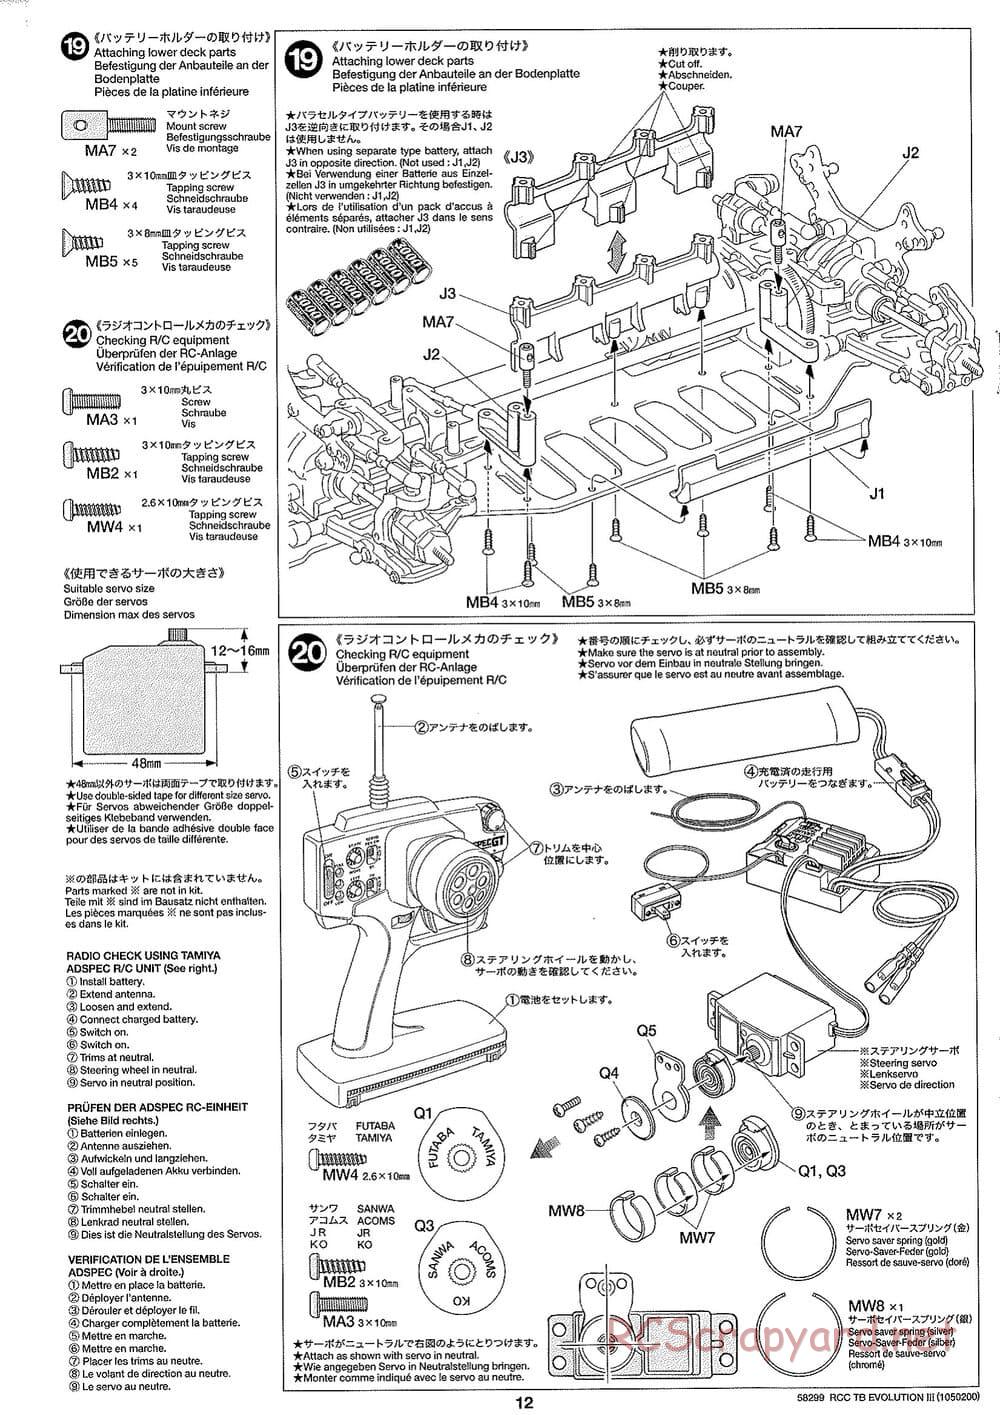 Tamiya - TB Evolution III Chassis - Manual - Page 13